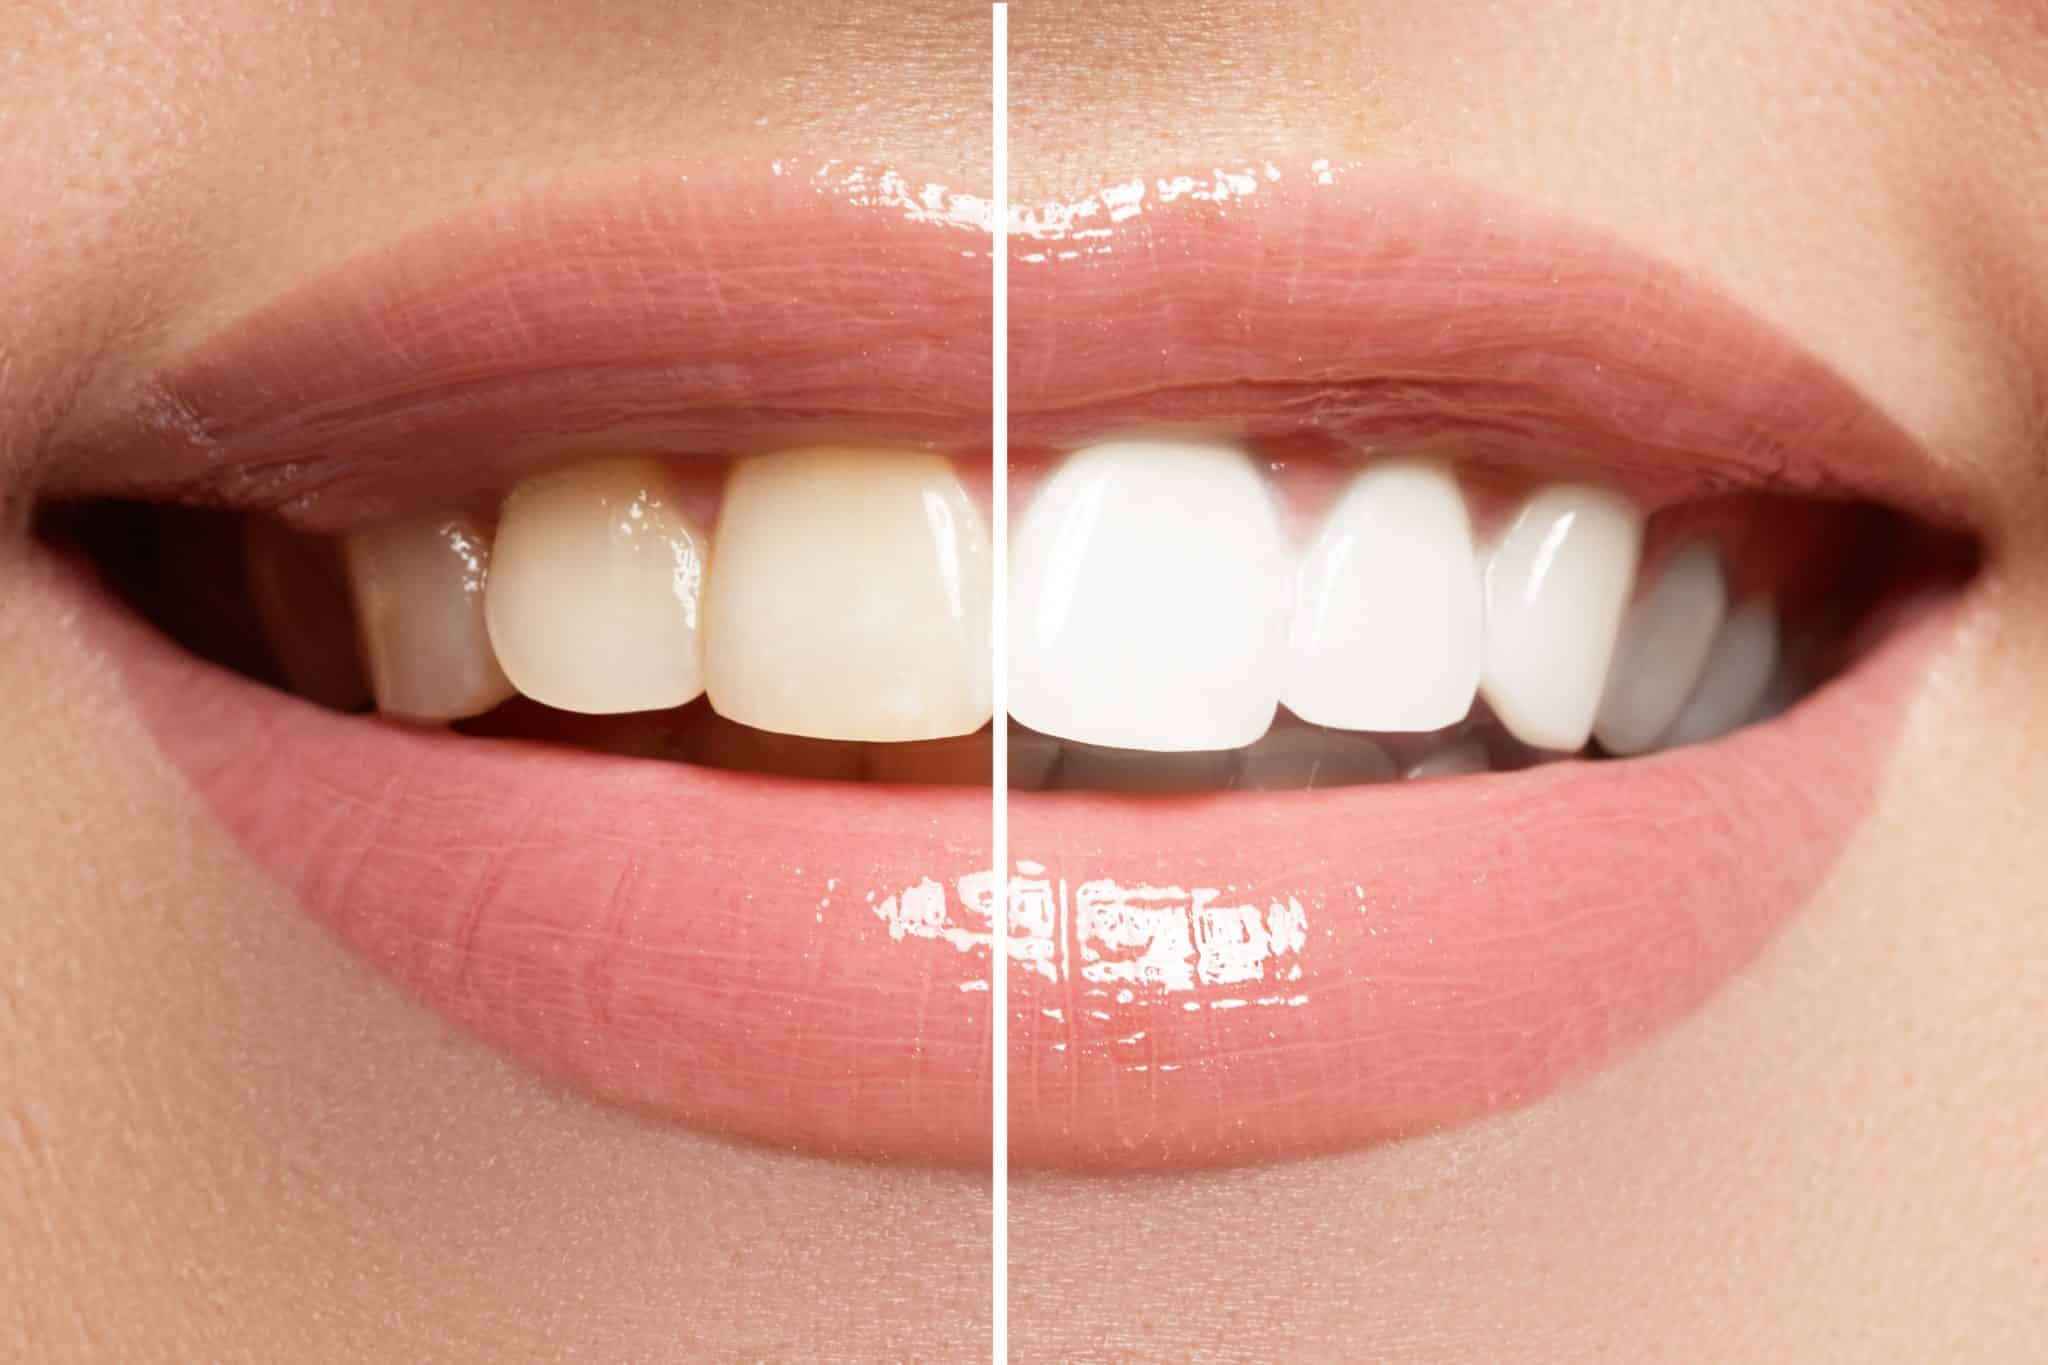 Vorher-Nachher-Aufnahme einer Zahnaufhellung: links Mund mit dunkleren Zähnen, rechts strahlend weiße Zähne.